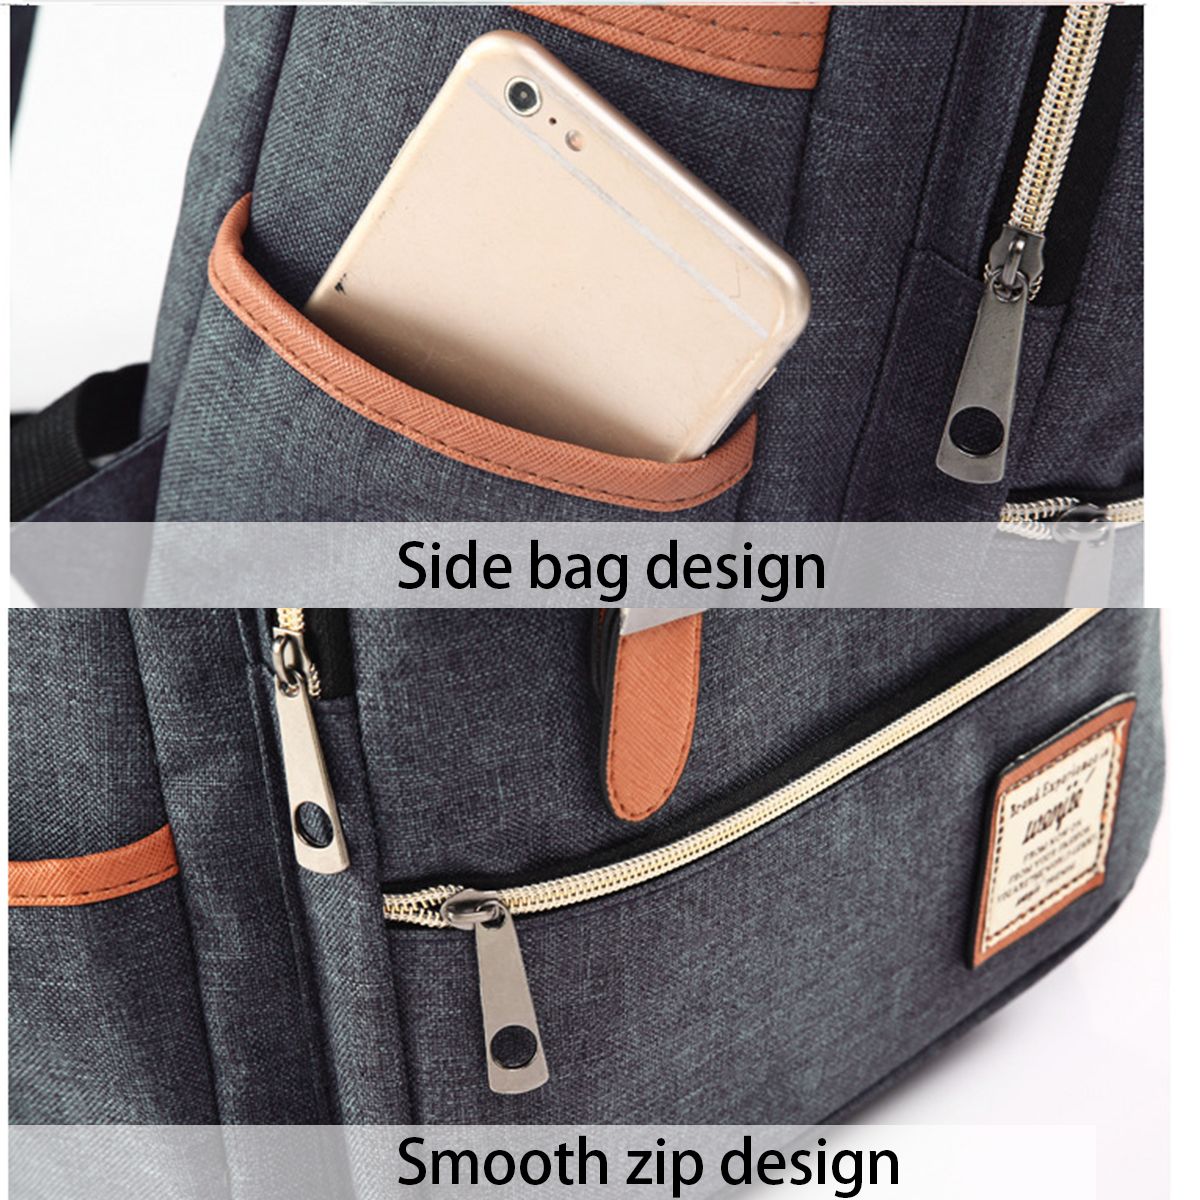 Business-Backpack-Laptop-Bag-Canvas-Shoulders-Storage-Bag-Men-Women-17L-Travel-Handbag-Schoolbag-for-1744128